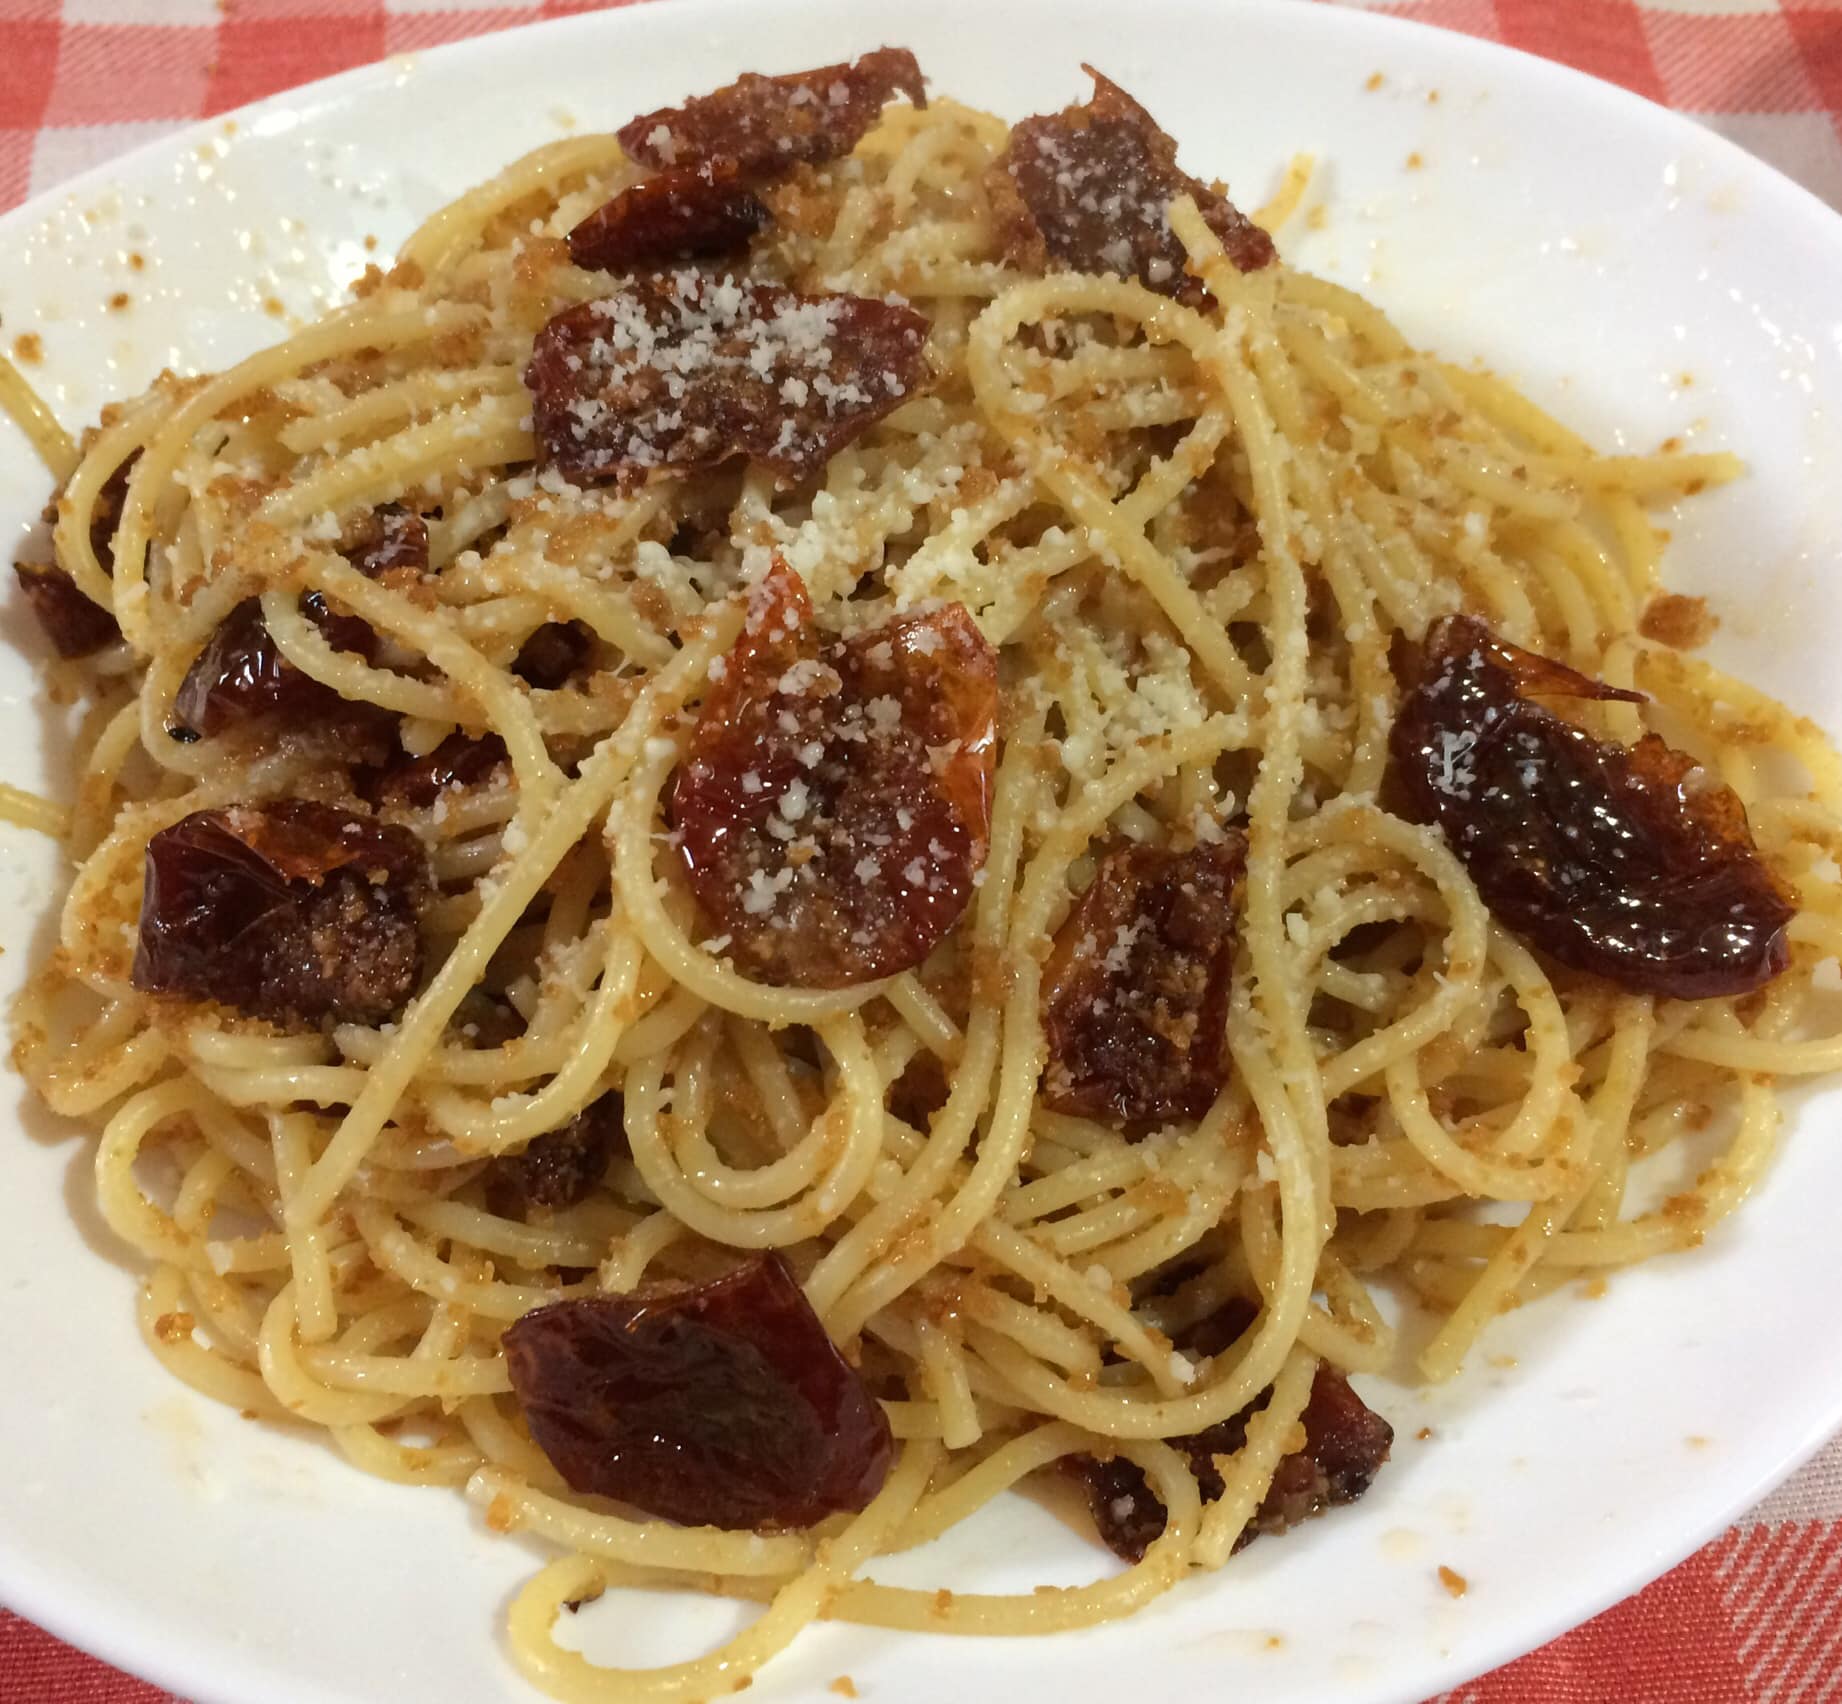 spaghetti-ammollicati-con-pomodorini-di-benedetta,-la-ricetta-salva-pranzo-piu-buona-dell’aglio-e-olio,-pronta-in-5-minuti